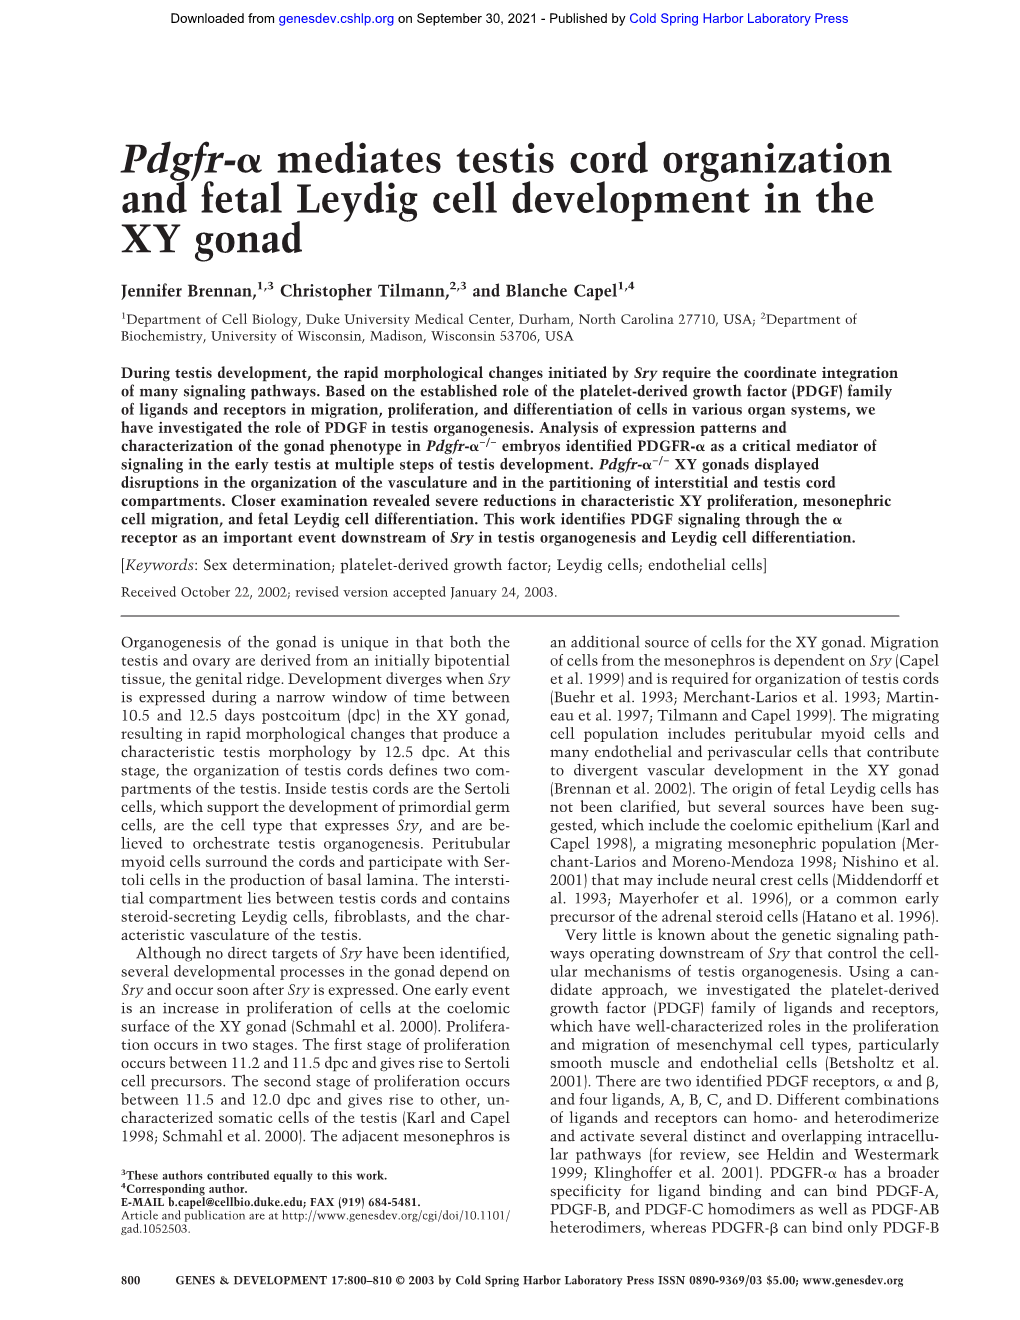 Mediates Testis Cord Organization and Fetal Leydig Cell Development in the XY Gonad